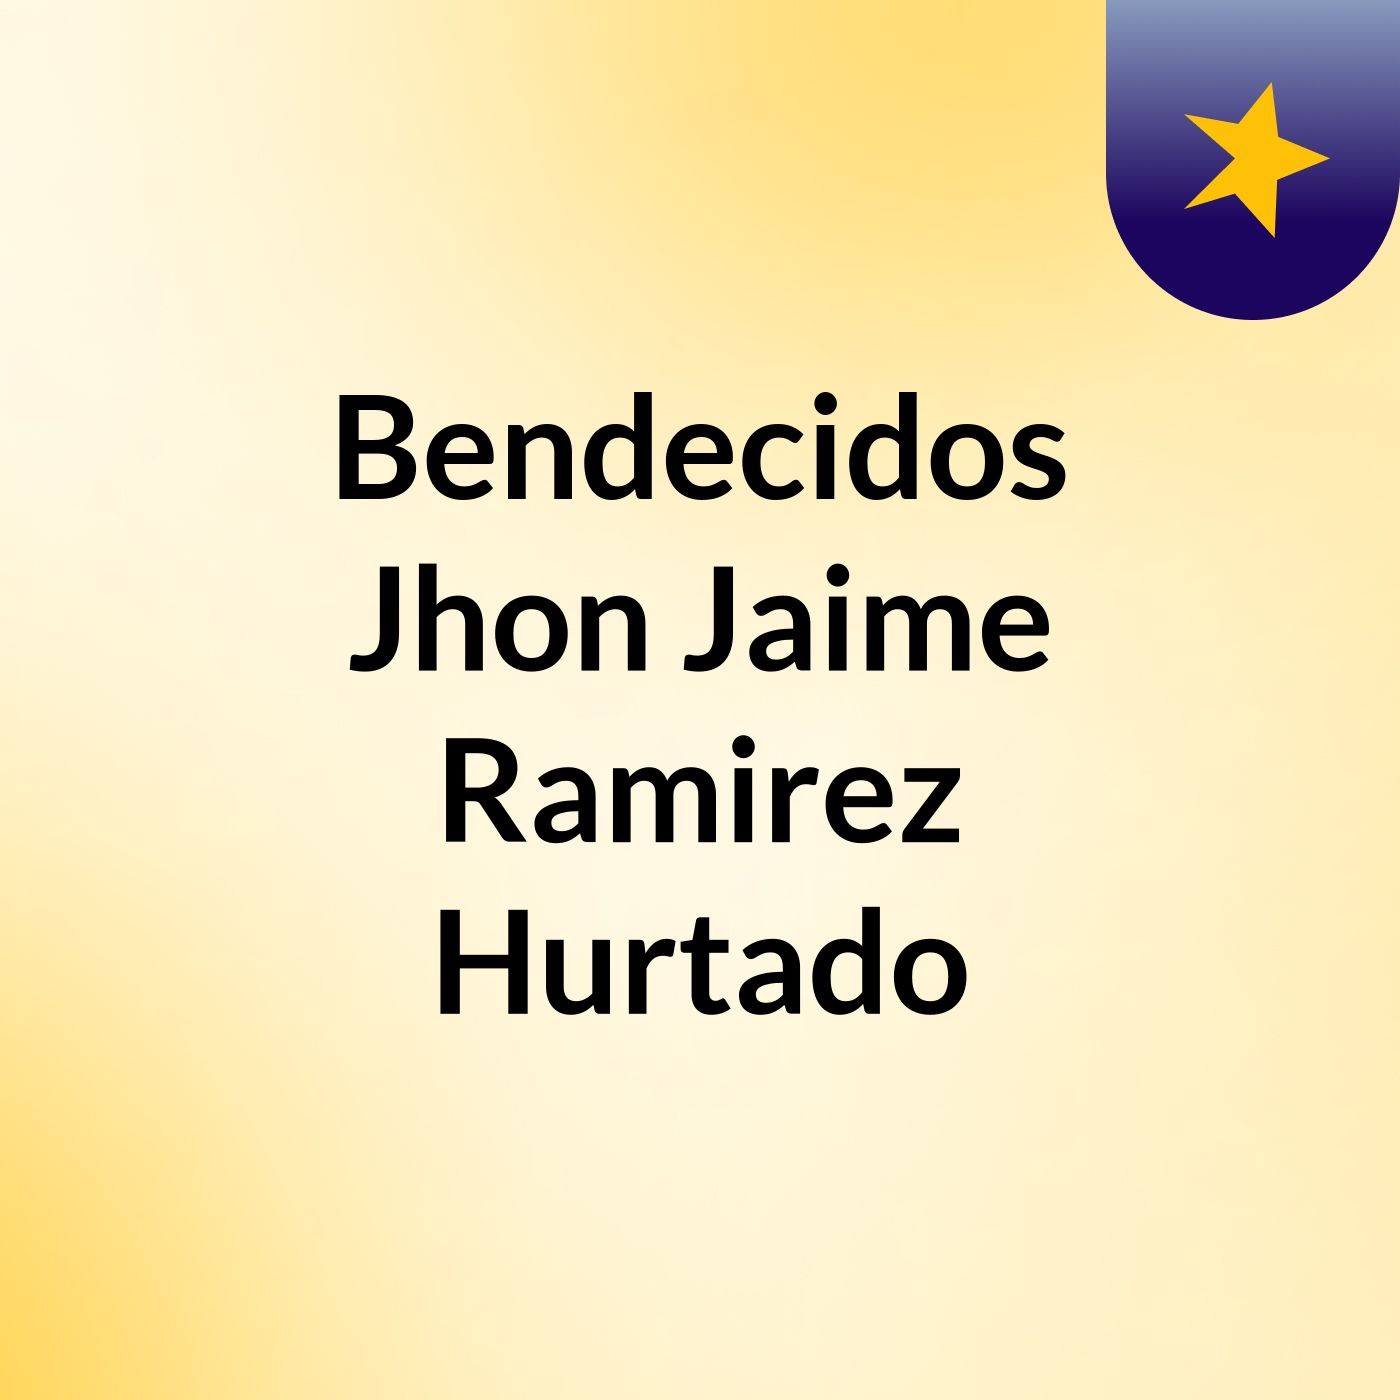 Episodio 14 - Bendecidos Jhon Jaime Ramirez Hurtado